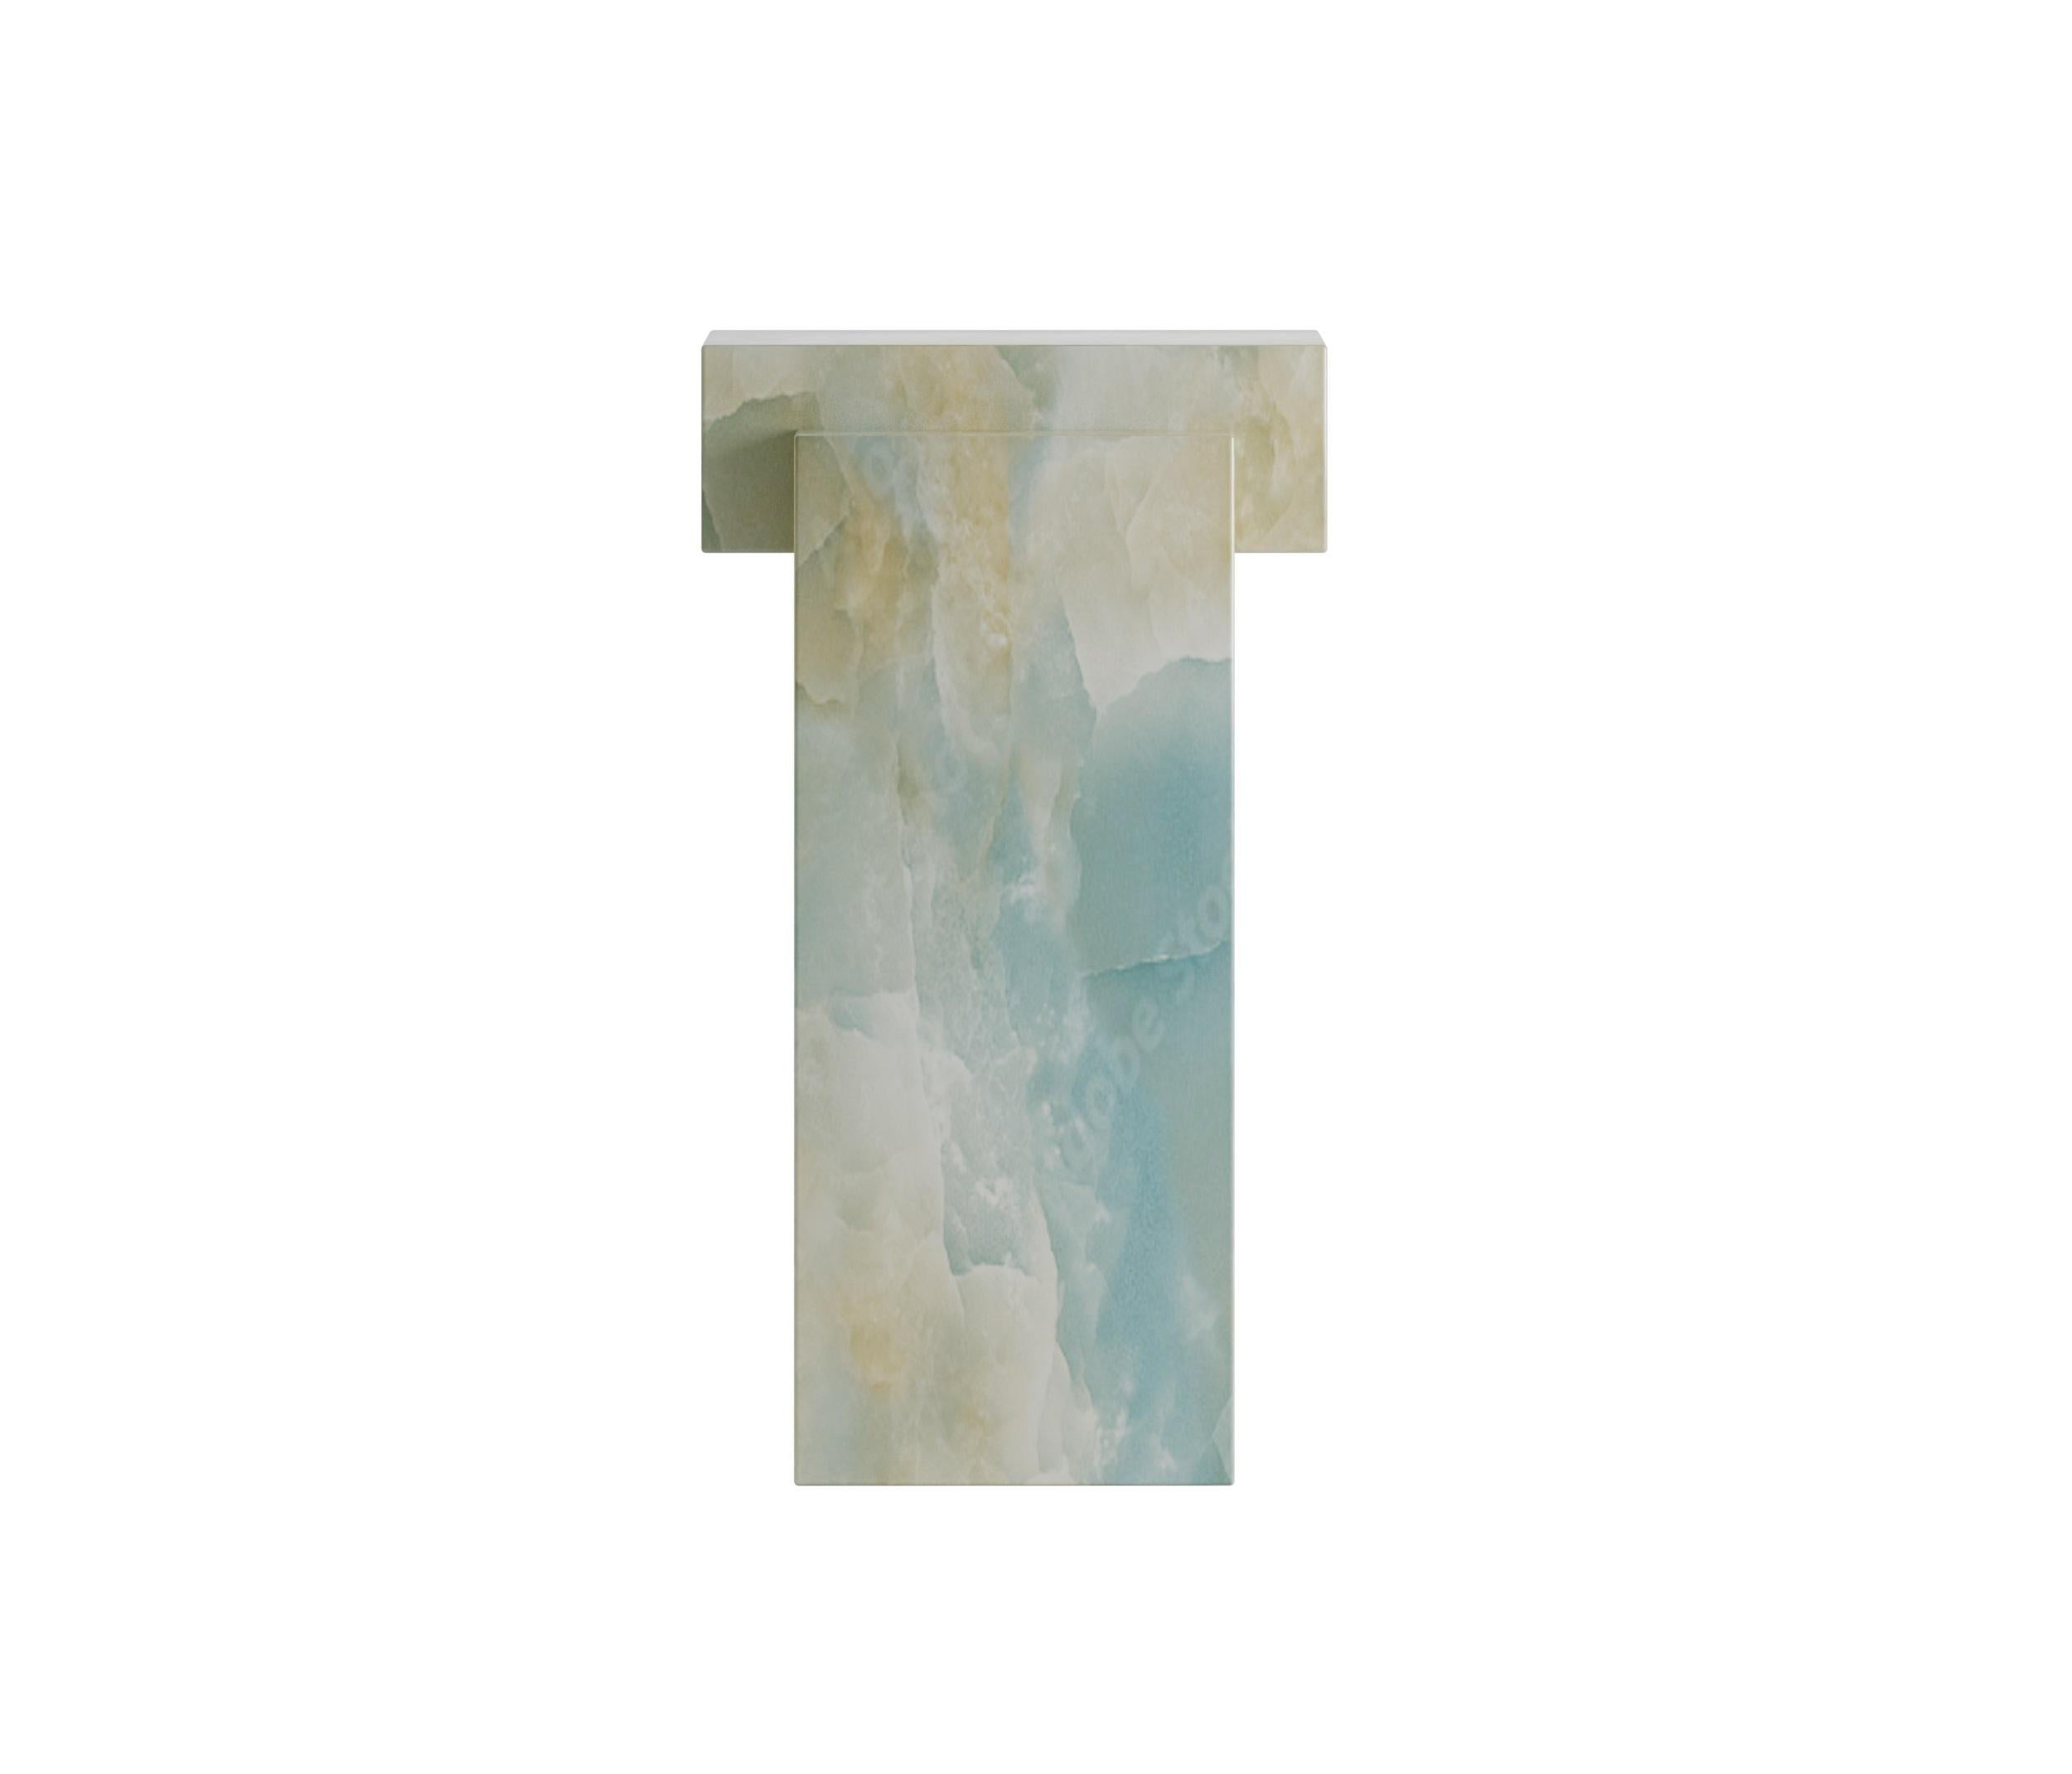 Avec son côté substantiel, la table d'appoint Hermès en onyx capture la nature même de la pierre et embrasse son essence. Ce design conserve parfaitement la pureté et l'élégance de ses composants. Son design basique et classique confère à toute